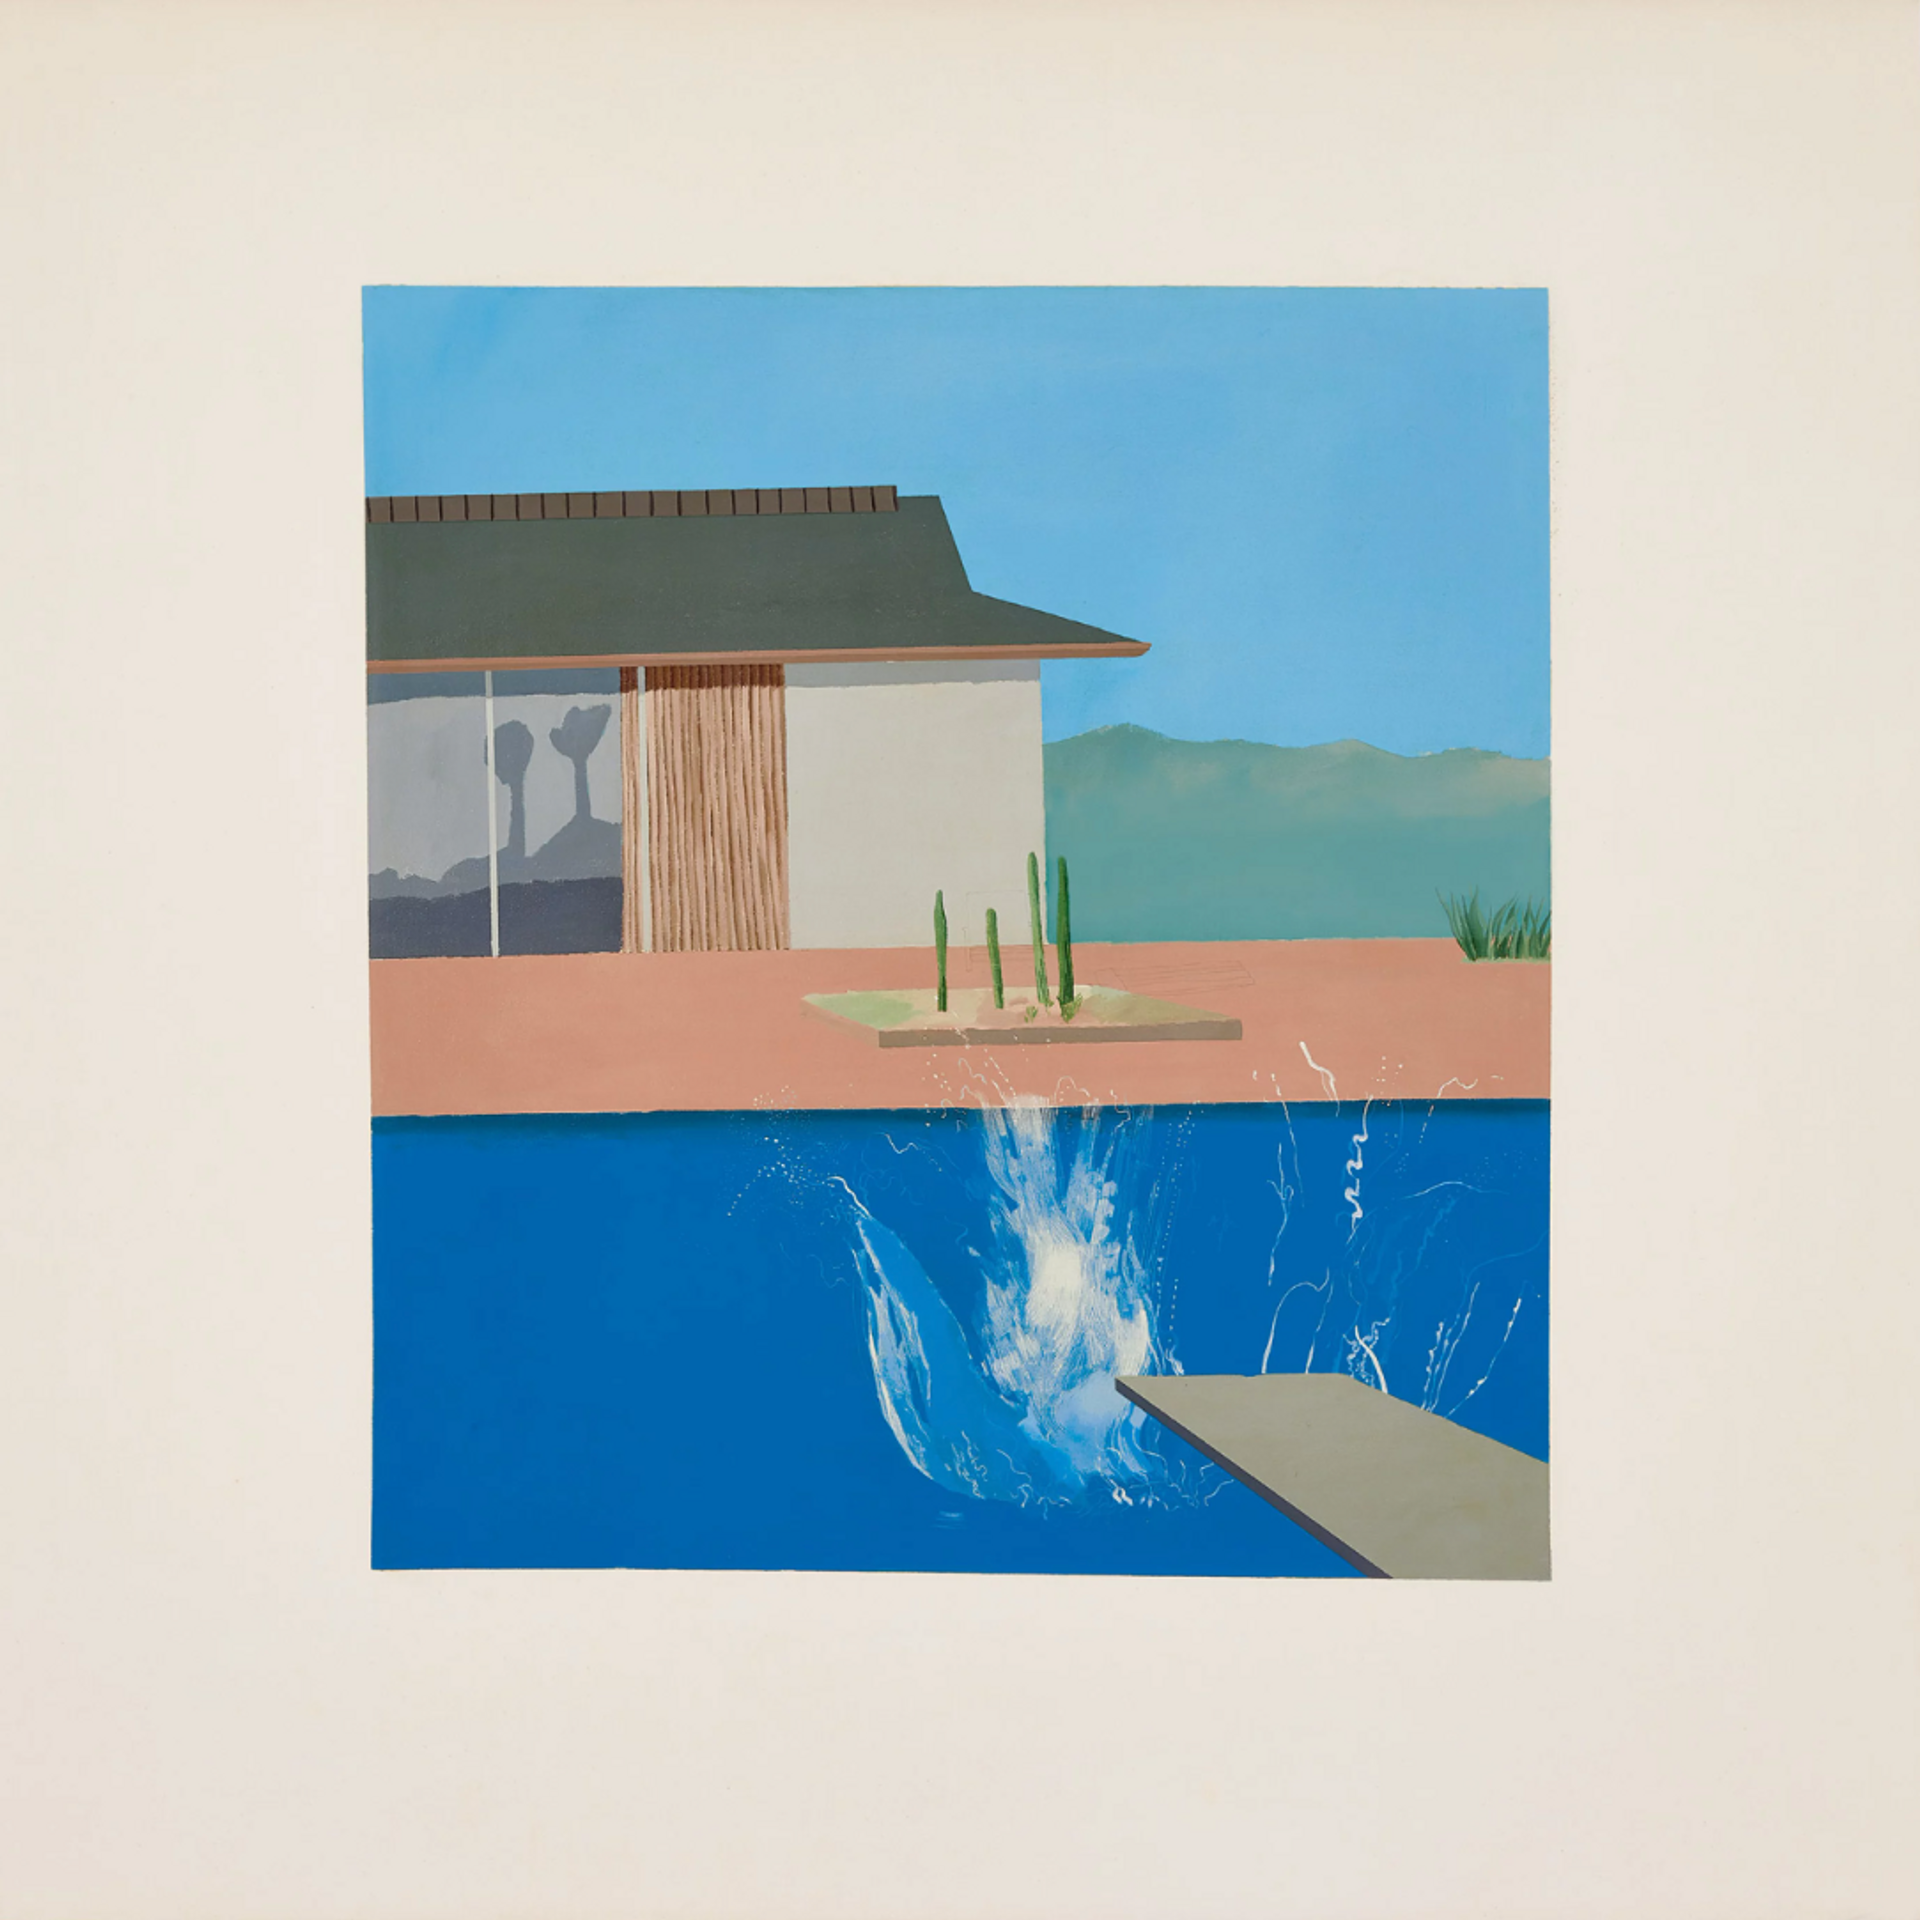 The Splash by David Hockney